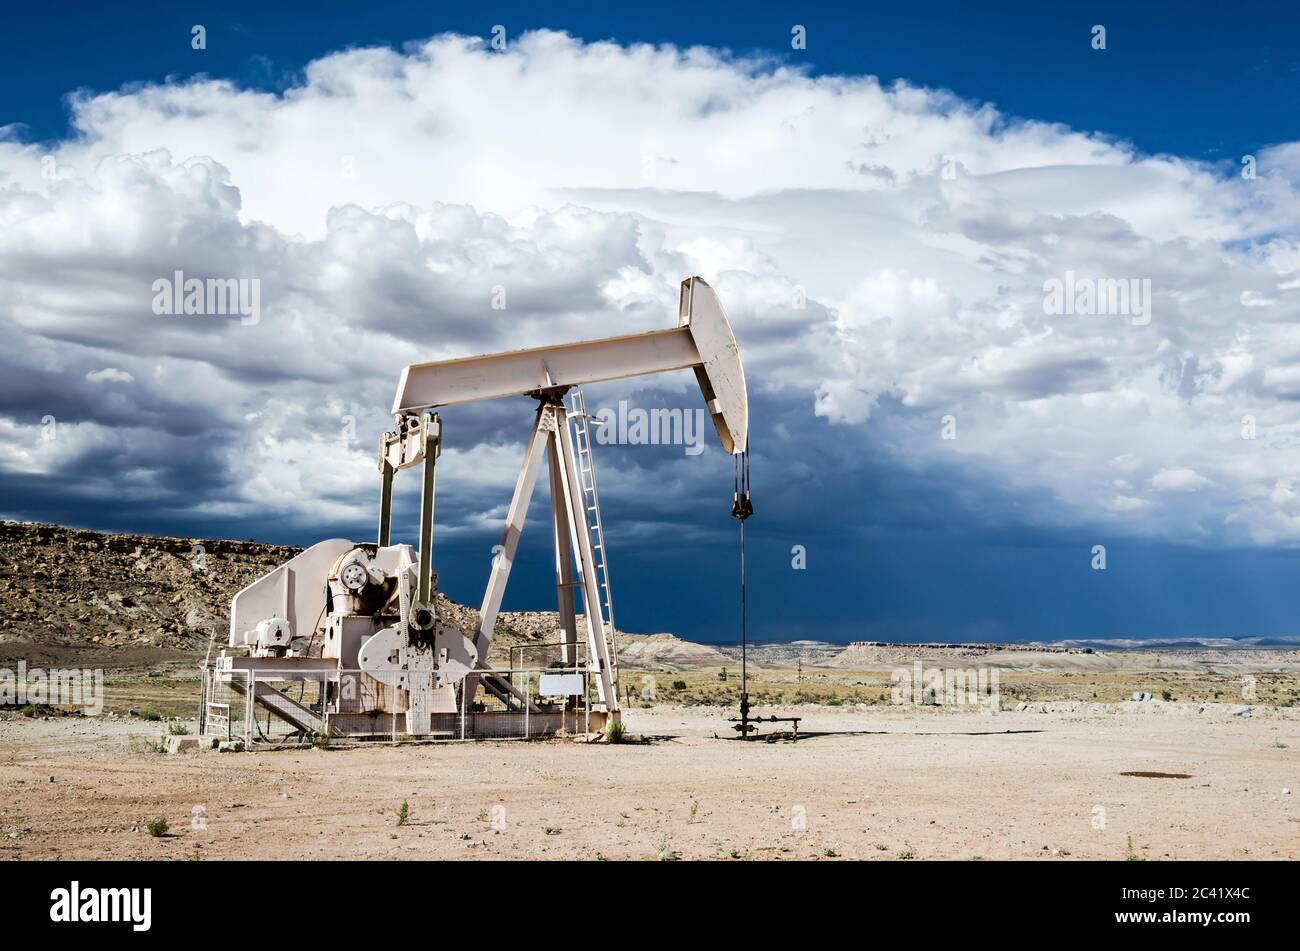 Pompa di olio nel deserto con nuvole scure di un temporale che incombe sullo sfondo Foto Stock